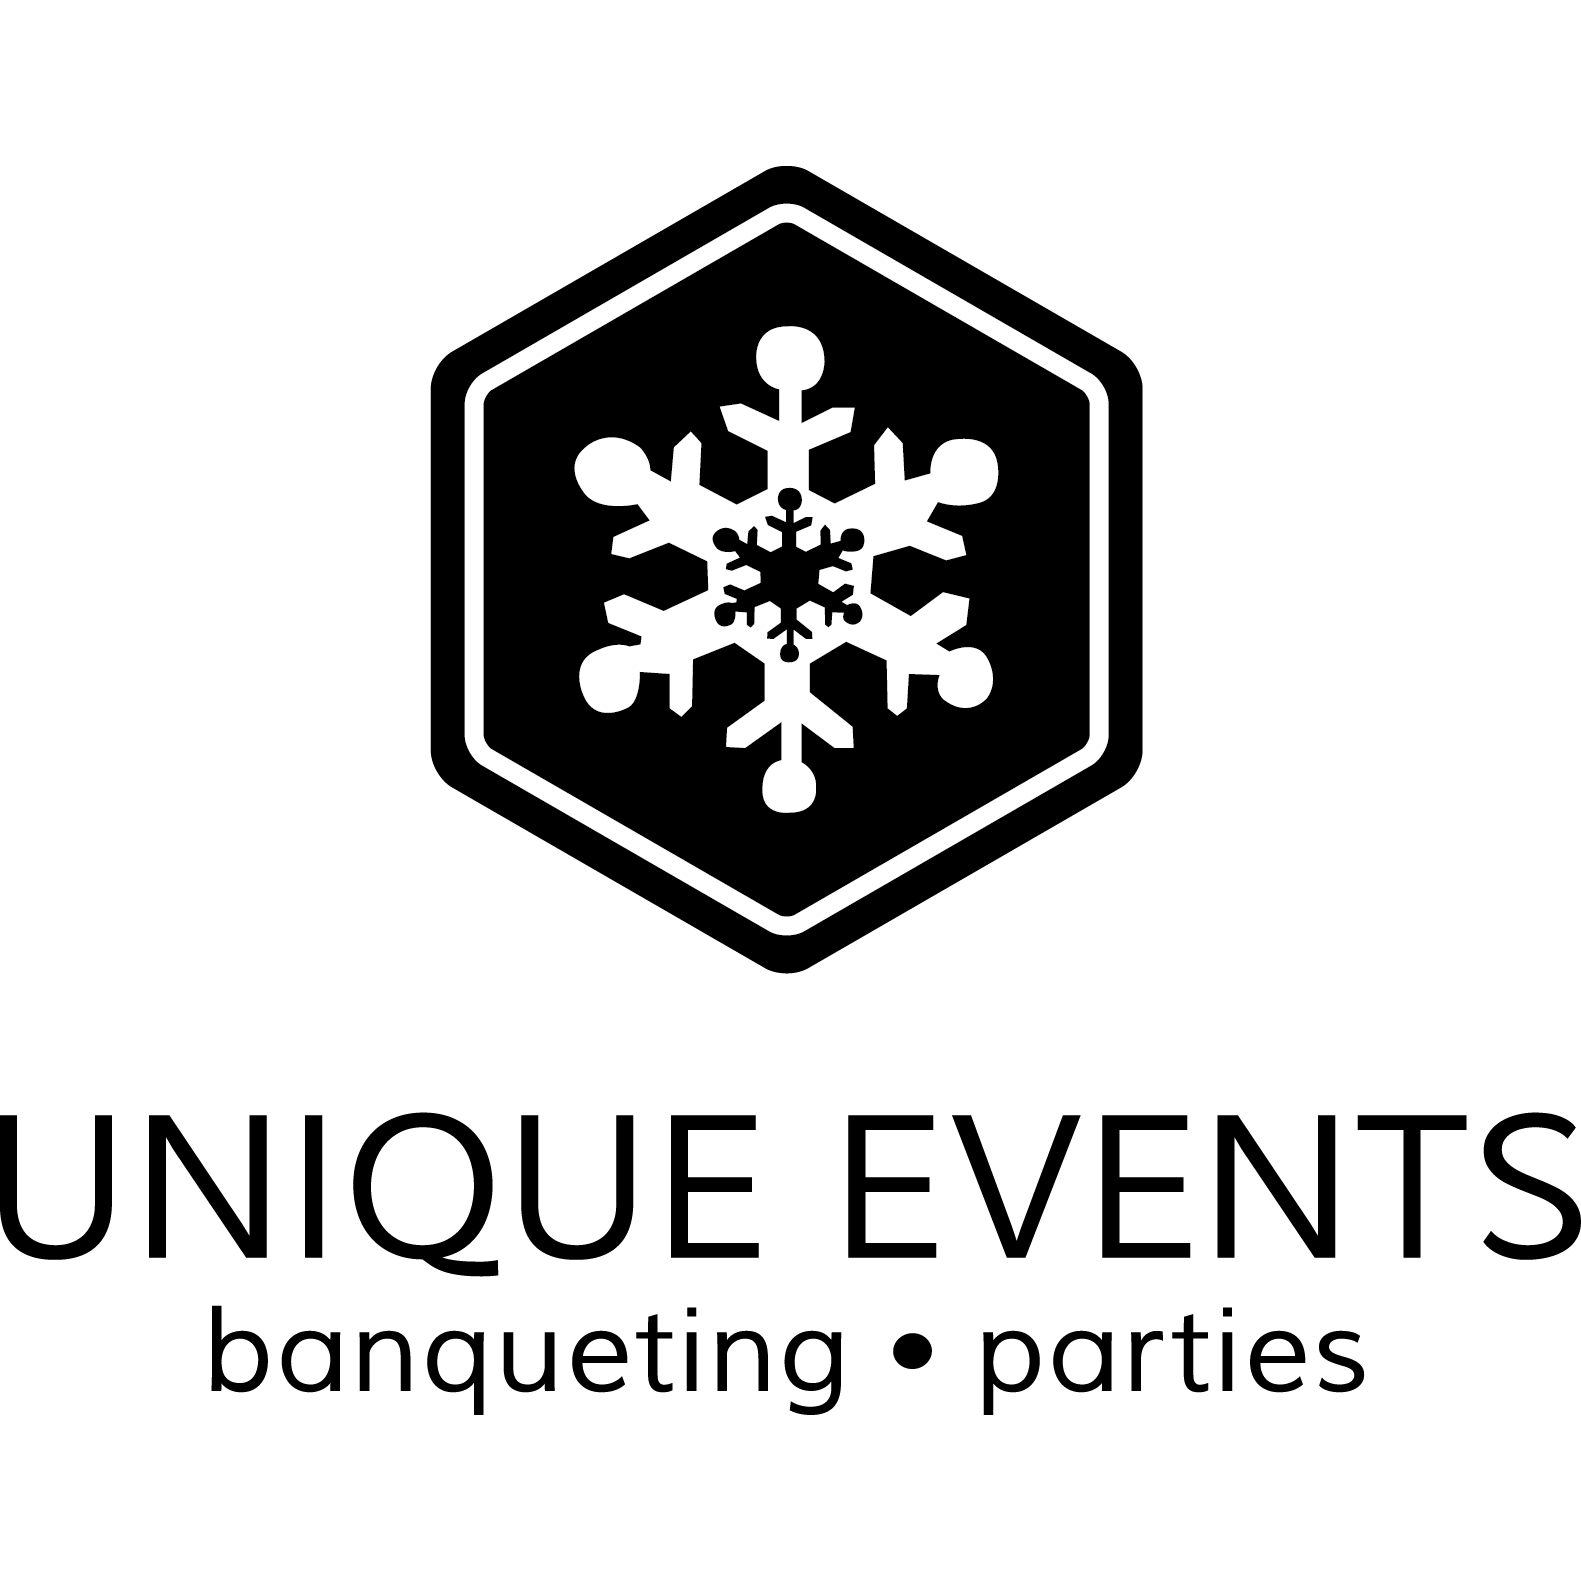 Unique Events - banqueting - parties